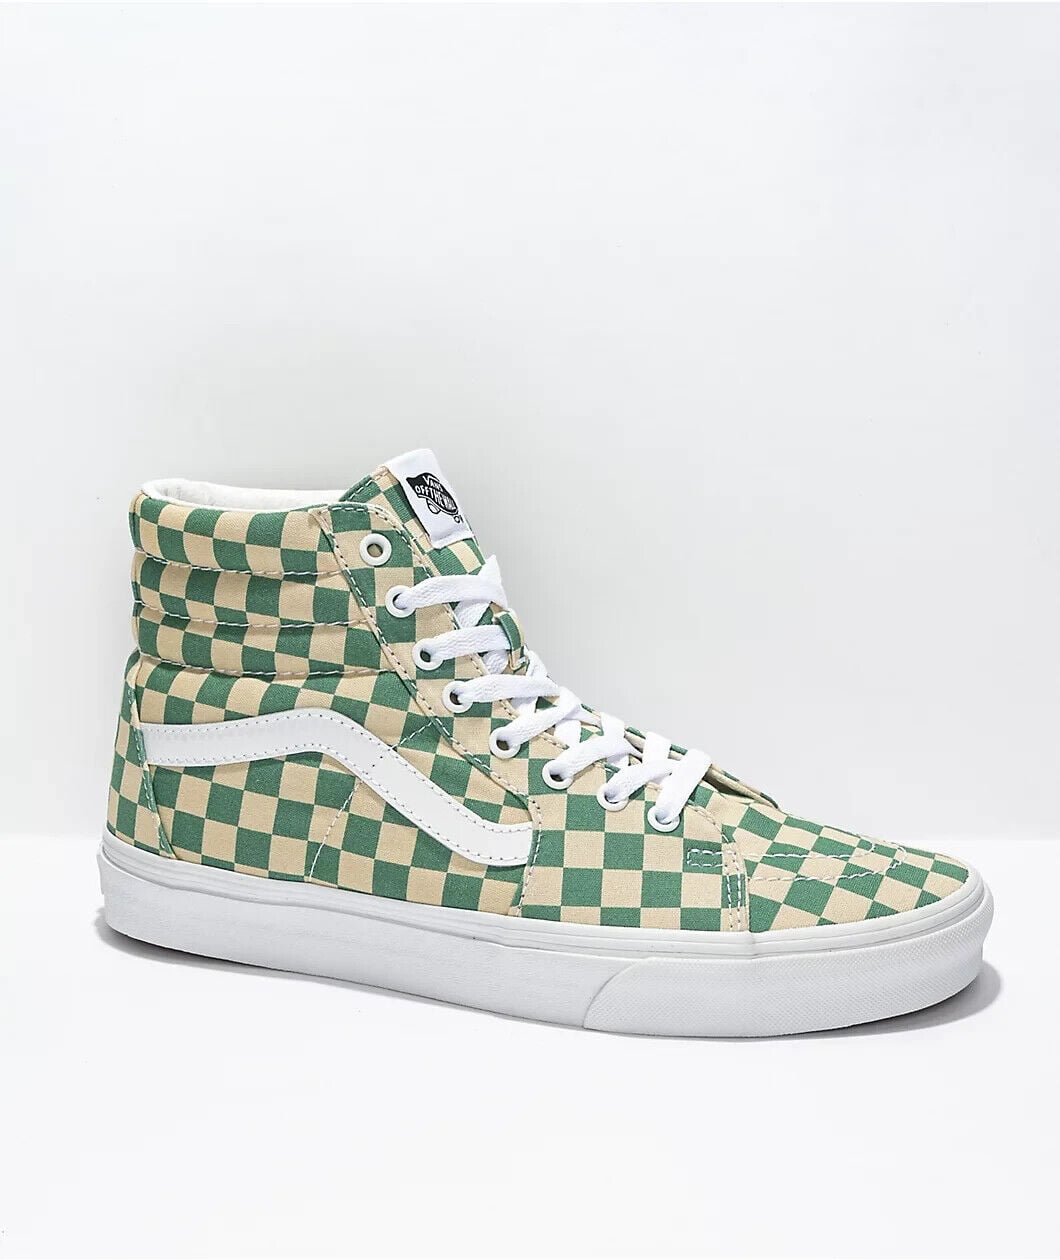 Patch ondernemen toewijzing Vans SK8 Hi Checkerboard Light Green Men's Classic Skate Shoes Size 10.5 -  Walmart.com